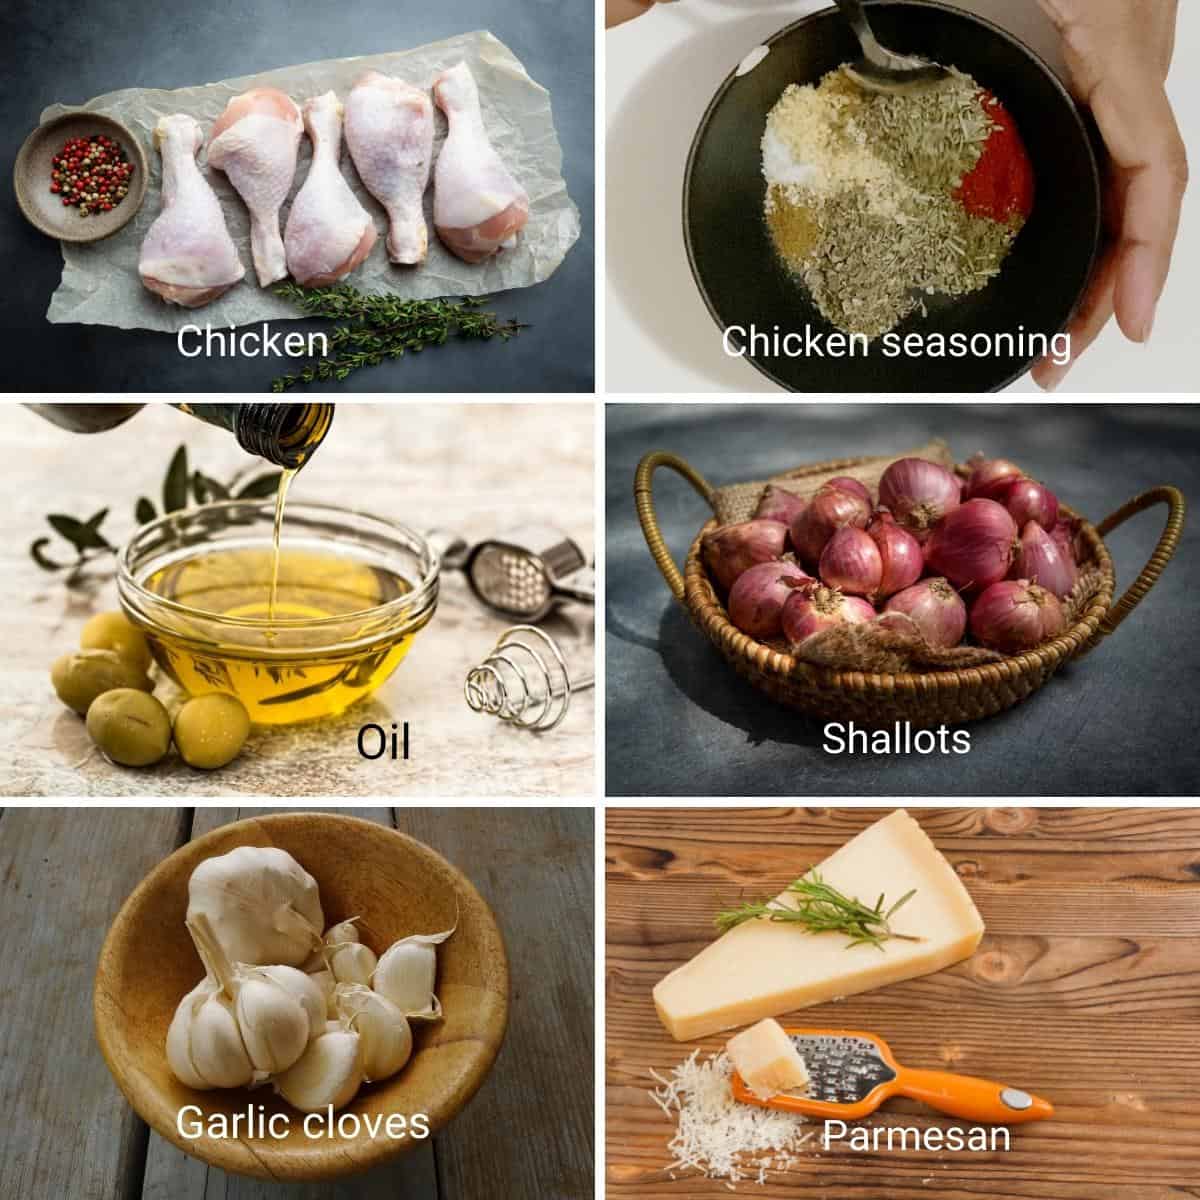 Ingredients for making chicken in sheet pan.